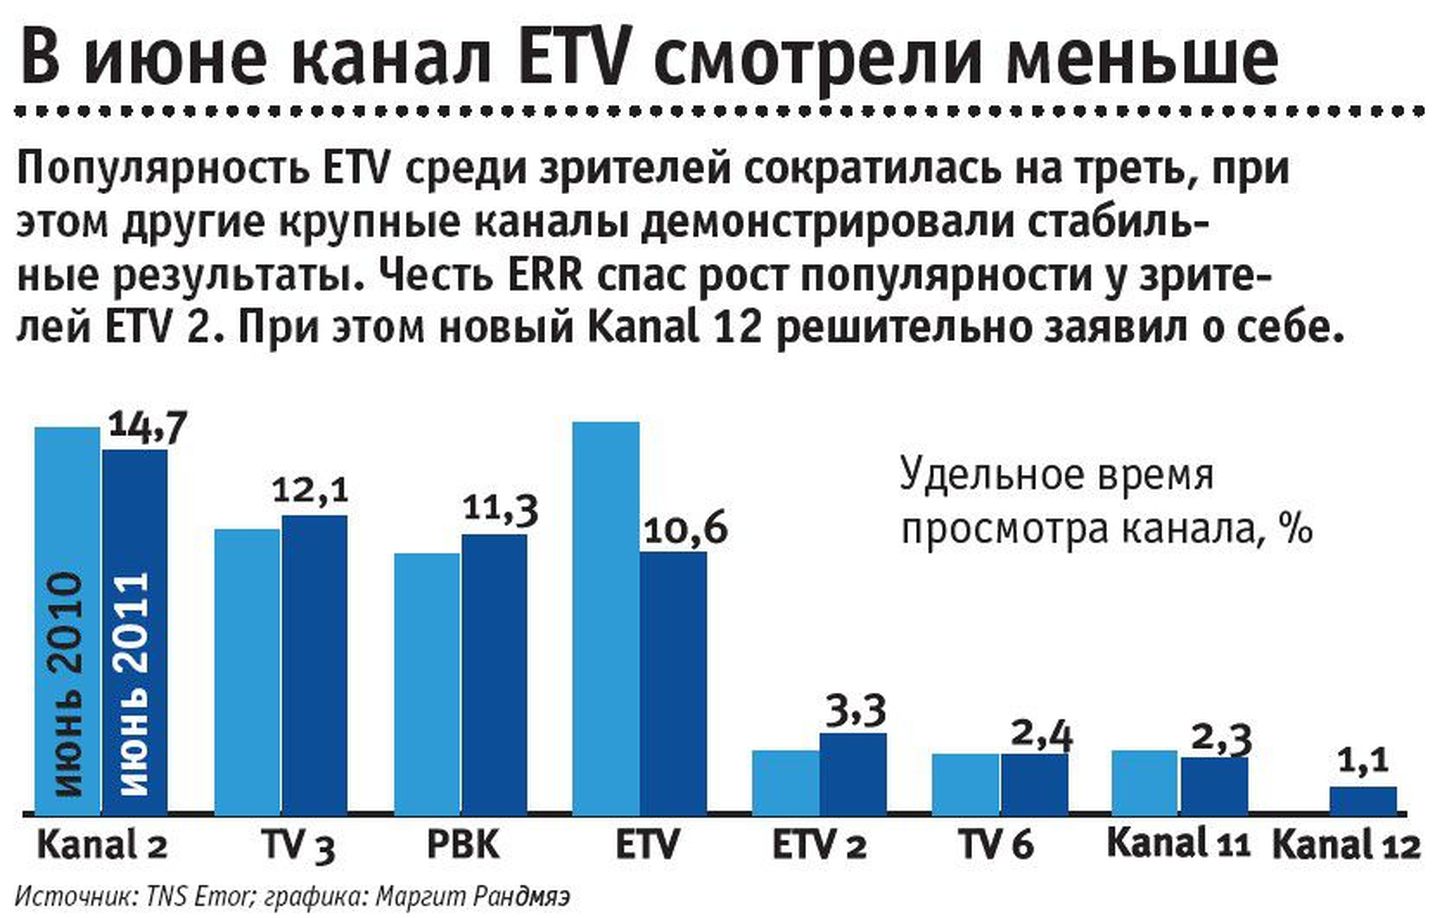 В июне канал ETV смотрели меньше.